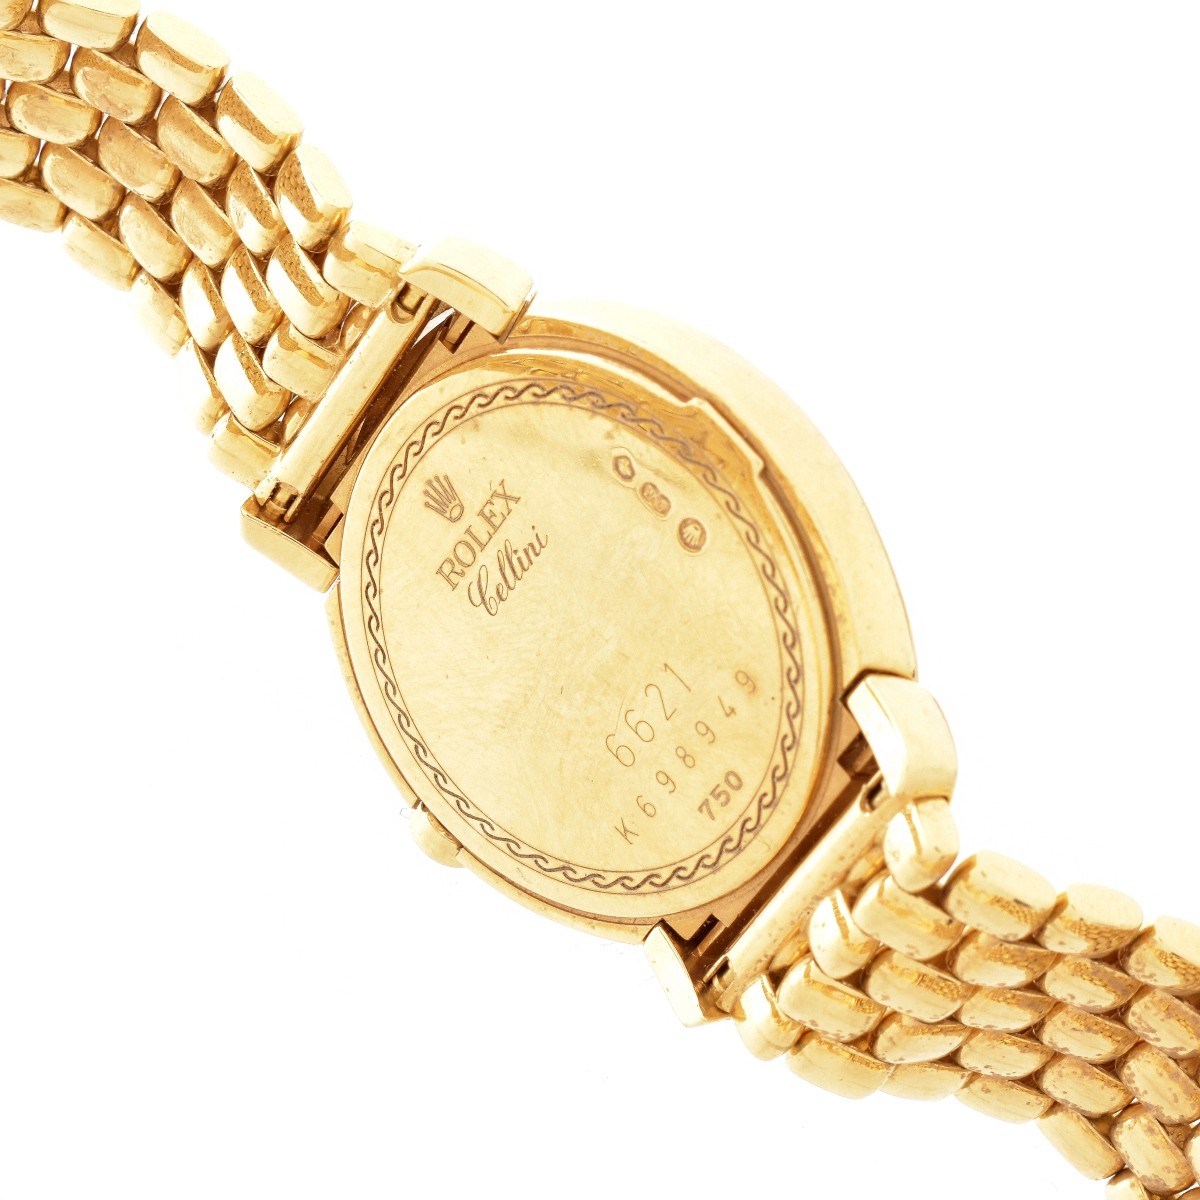 Lady's Rolex Cellini 18K Watch